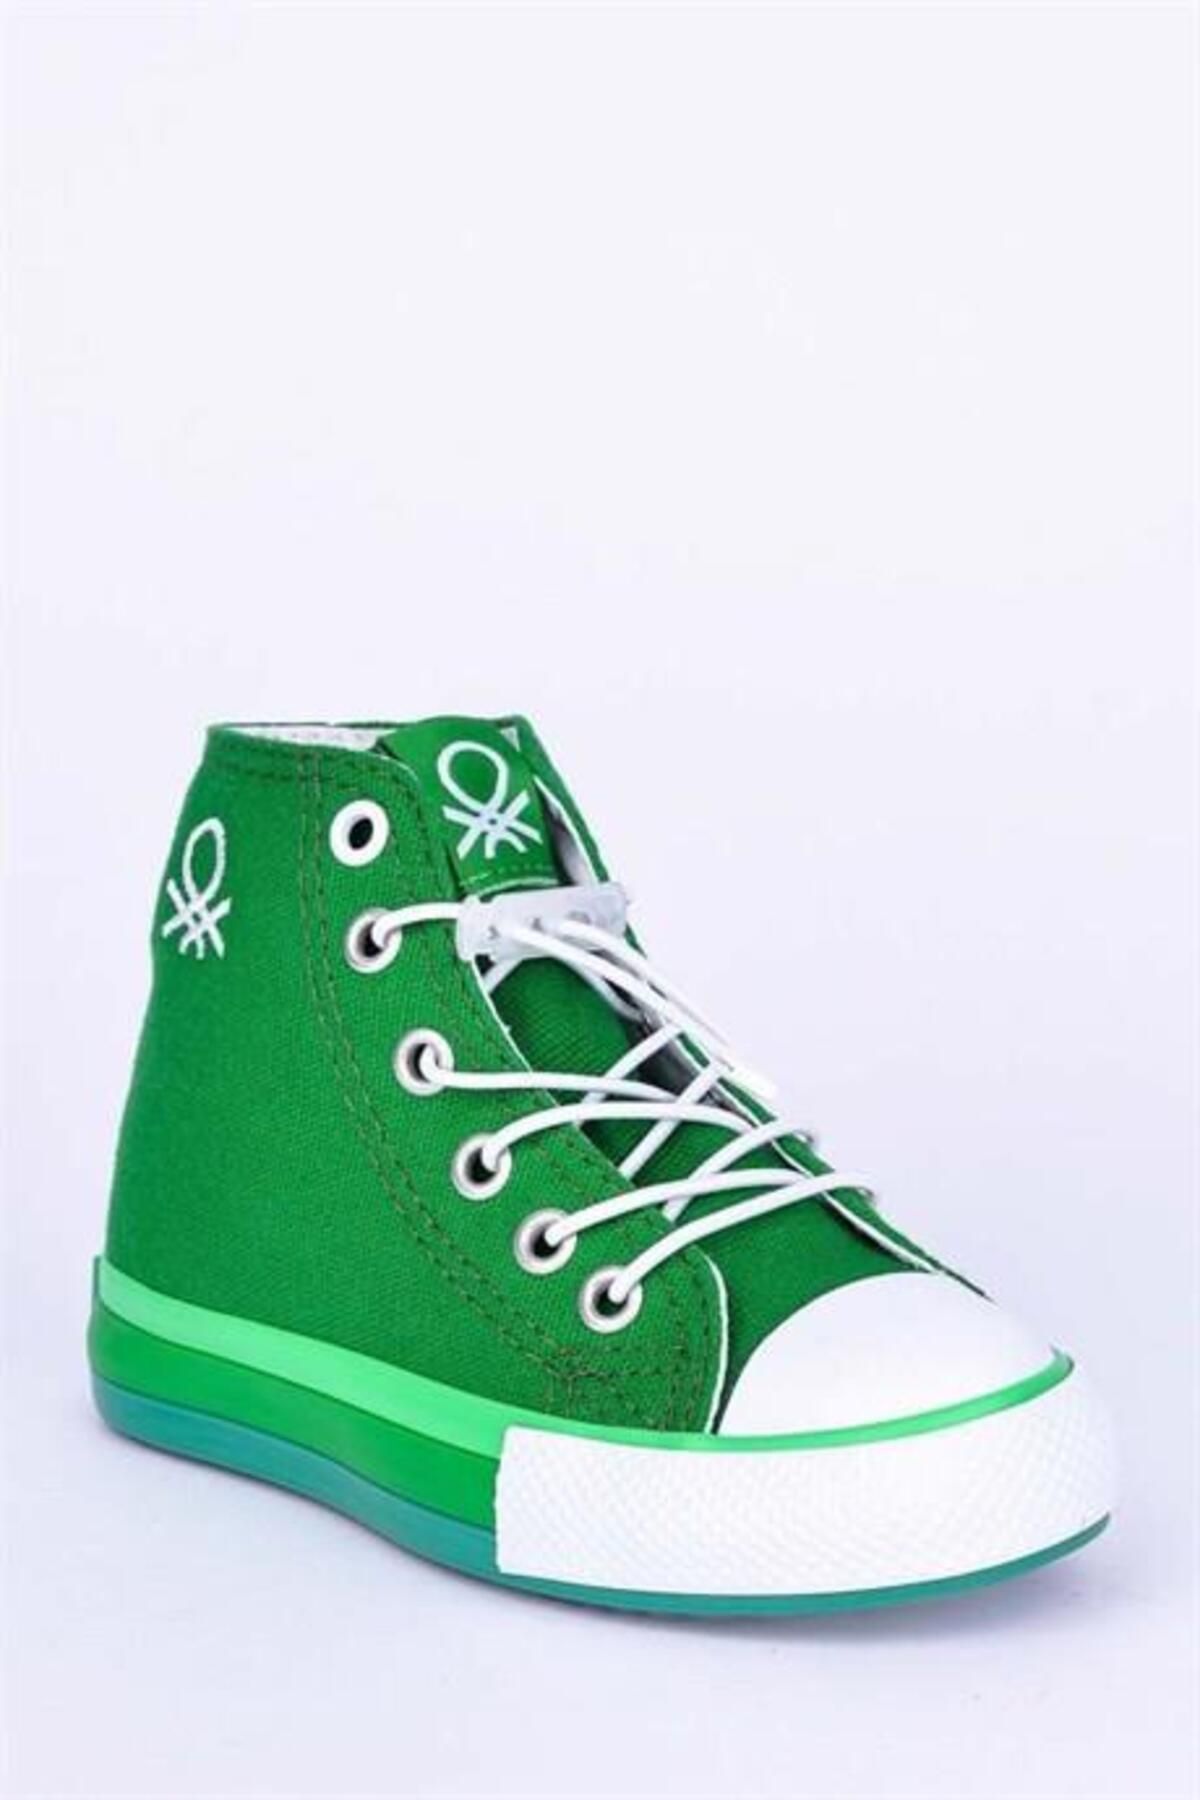 Benetton Patik Yeşil Çocuk Spor Ayakkabı